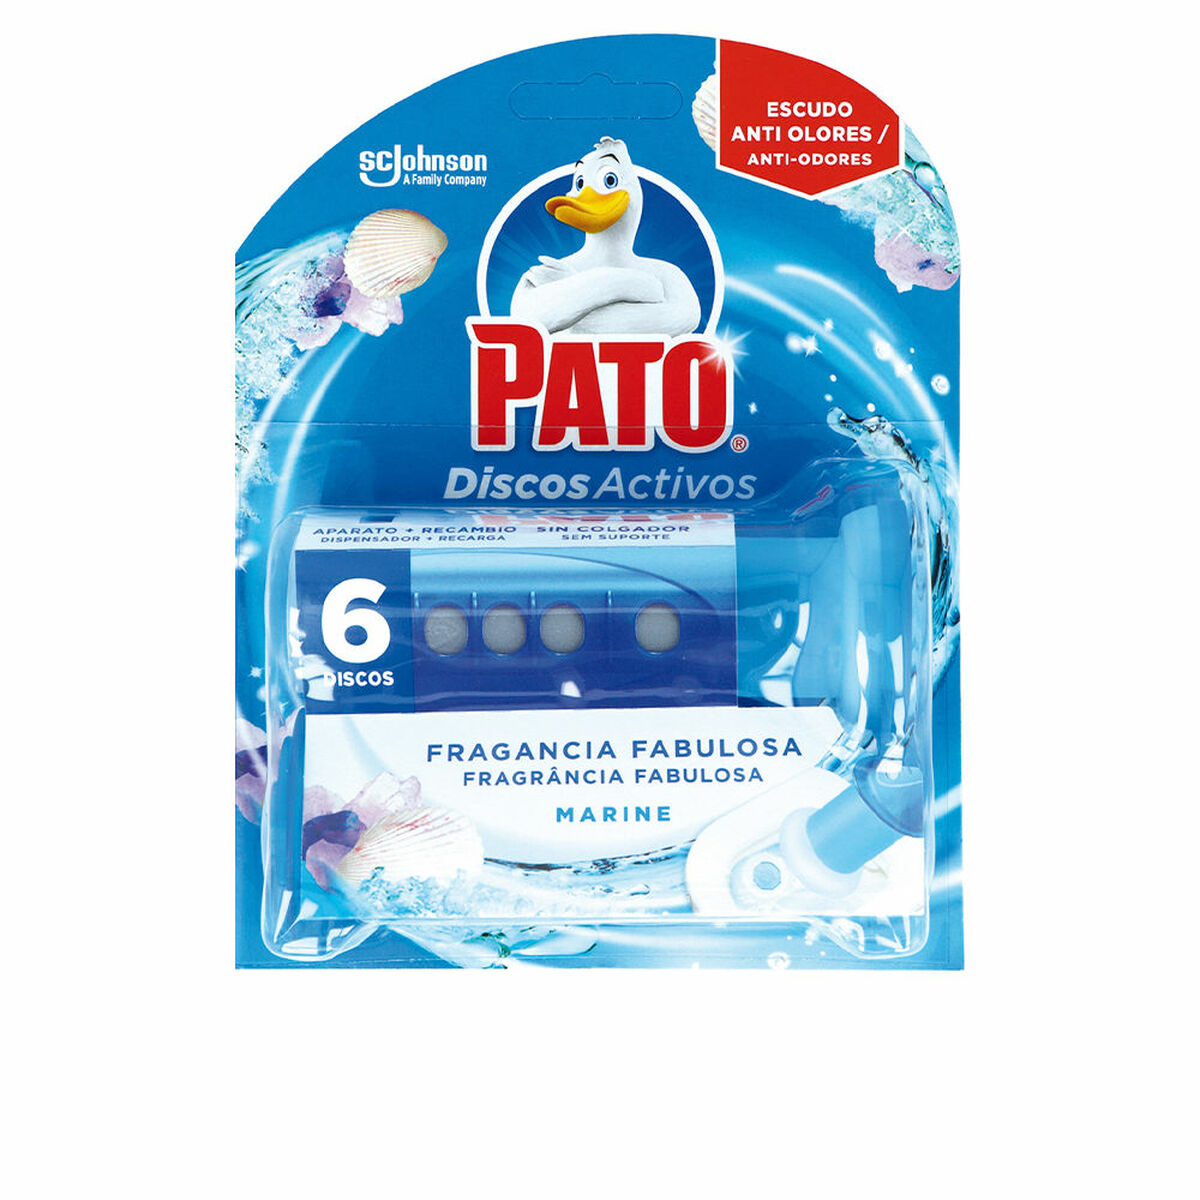 PATO® Discos Activos WC Lima para Inodoro, Limpia y Desinfecta